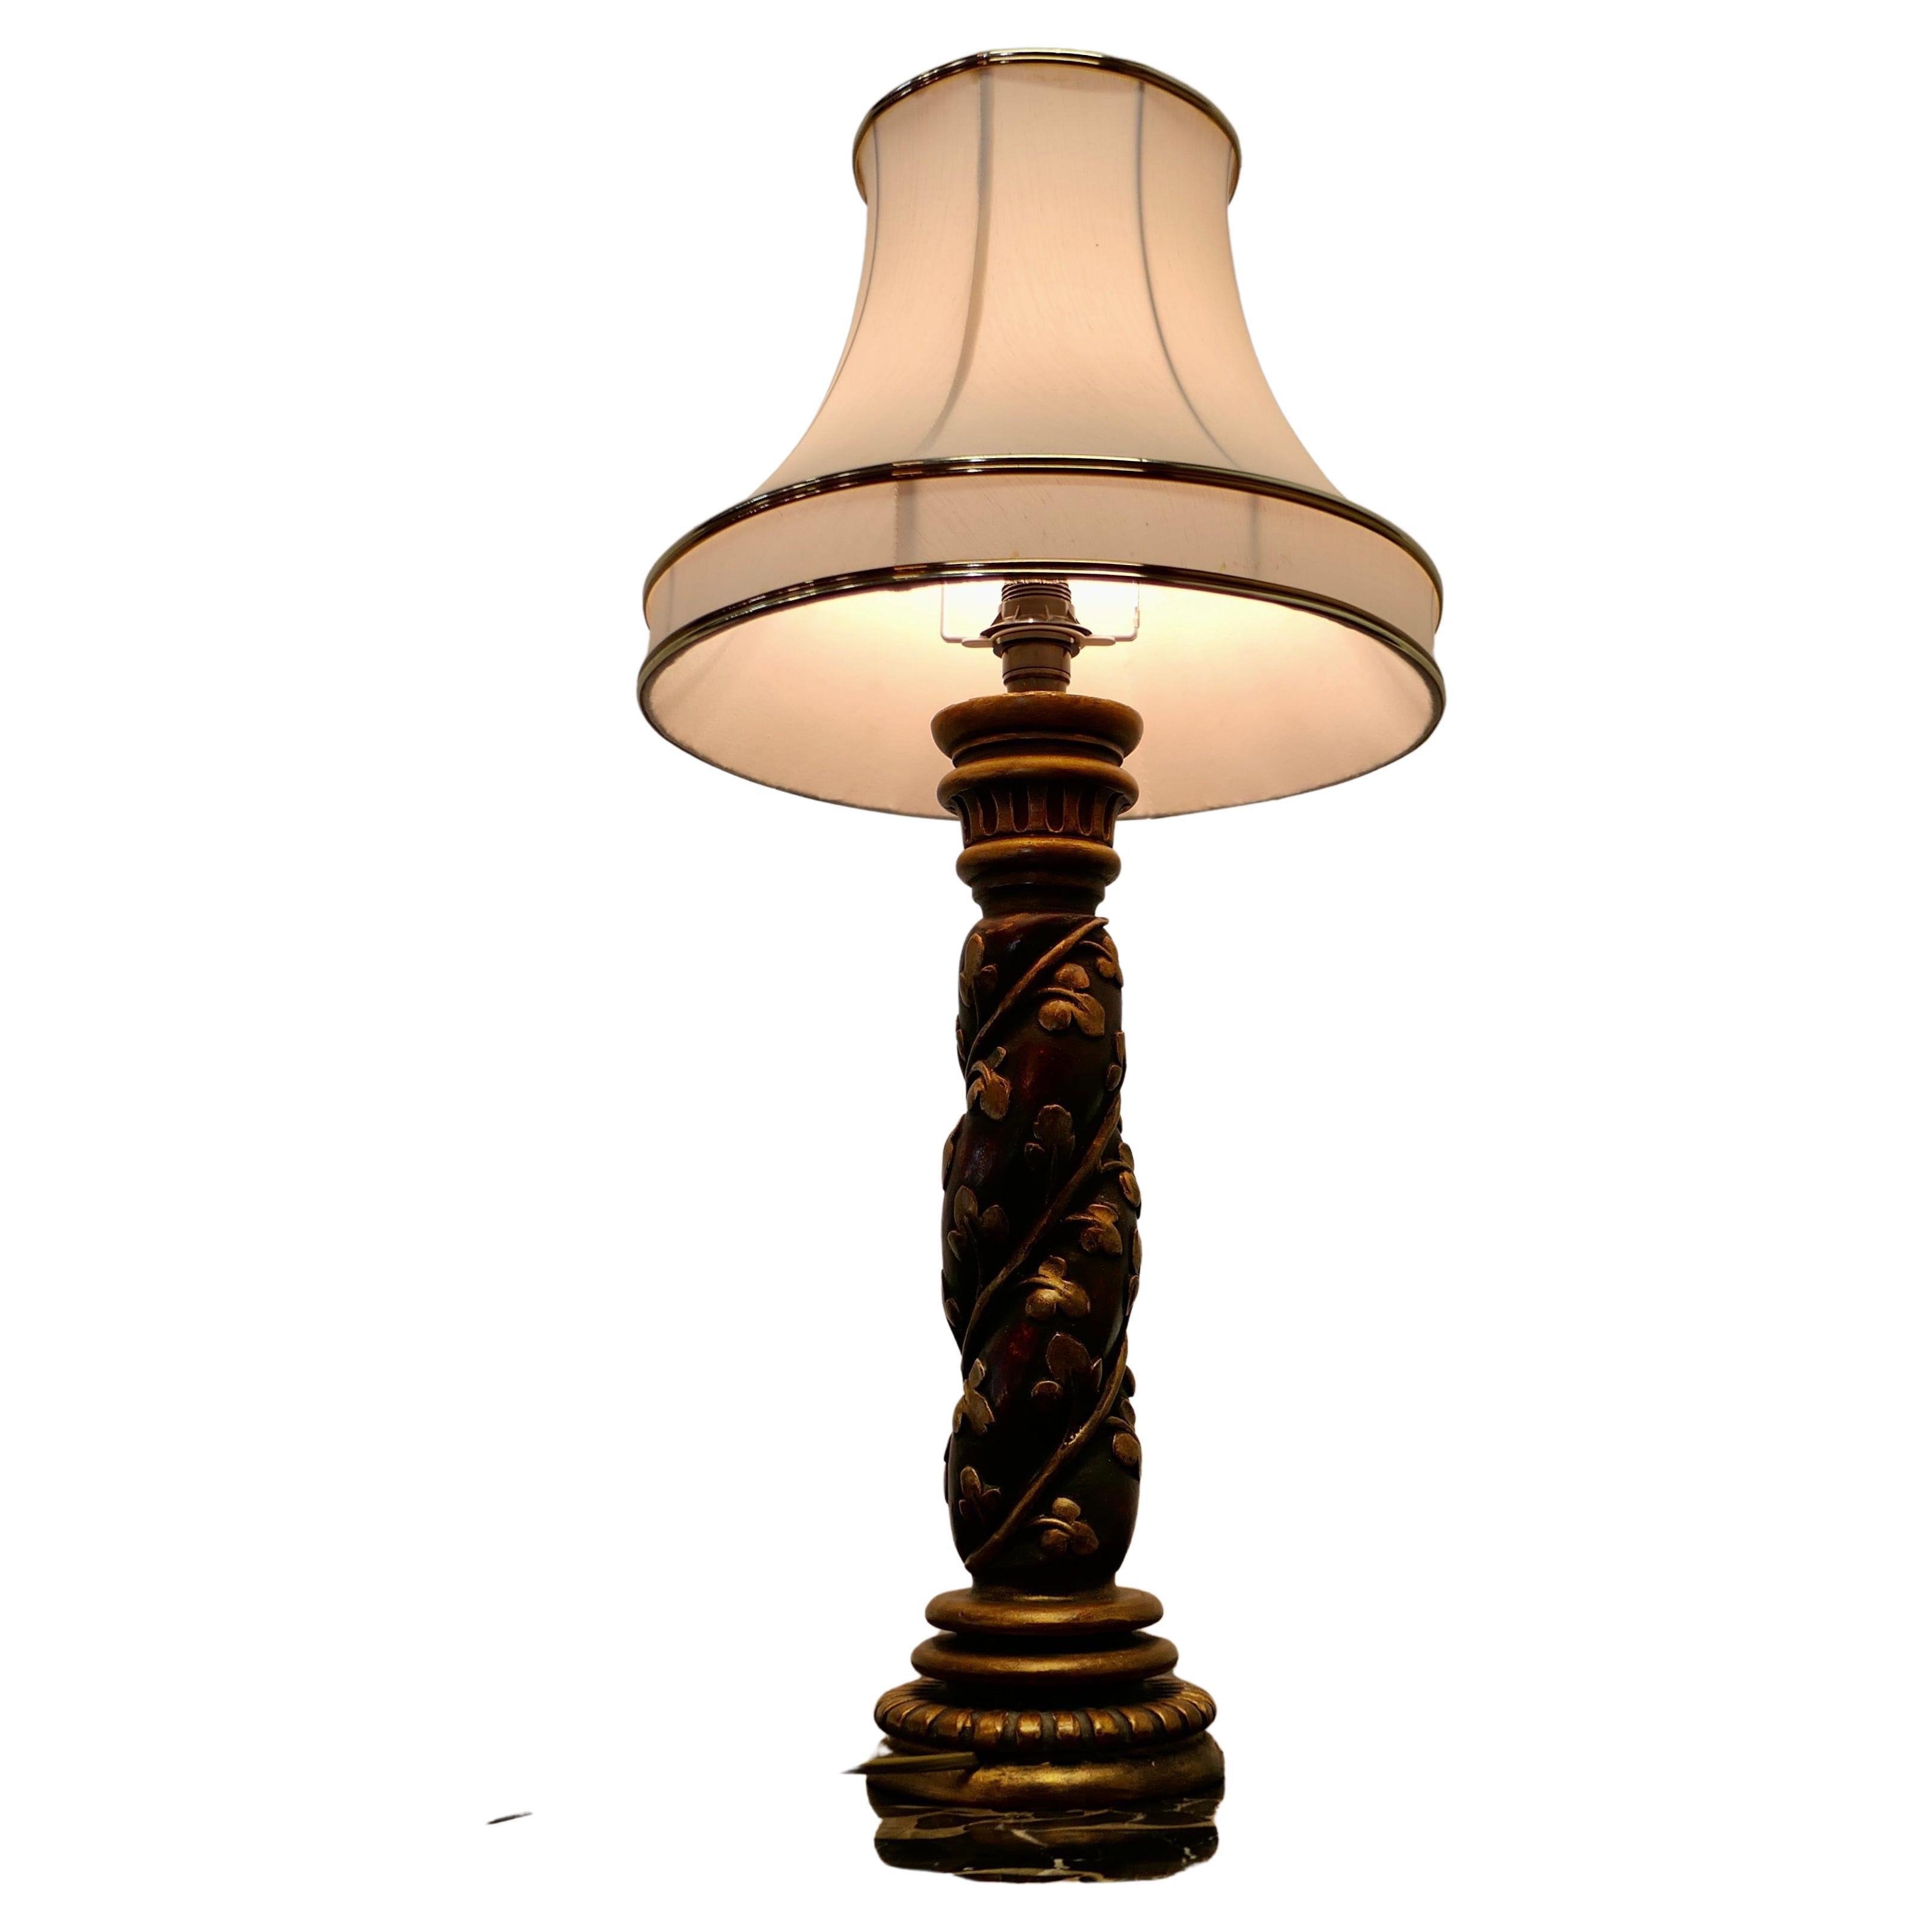 Charmante lampe de style baroque sculptée et dorée